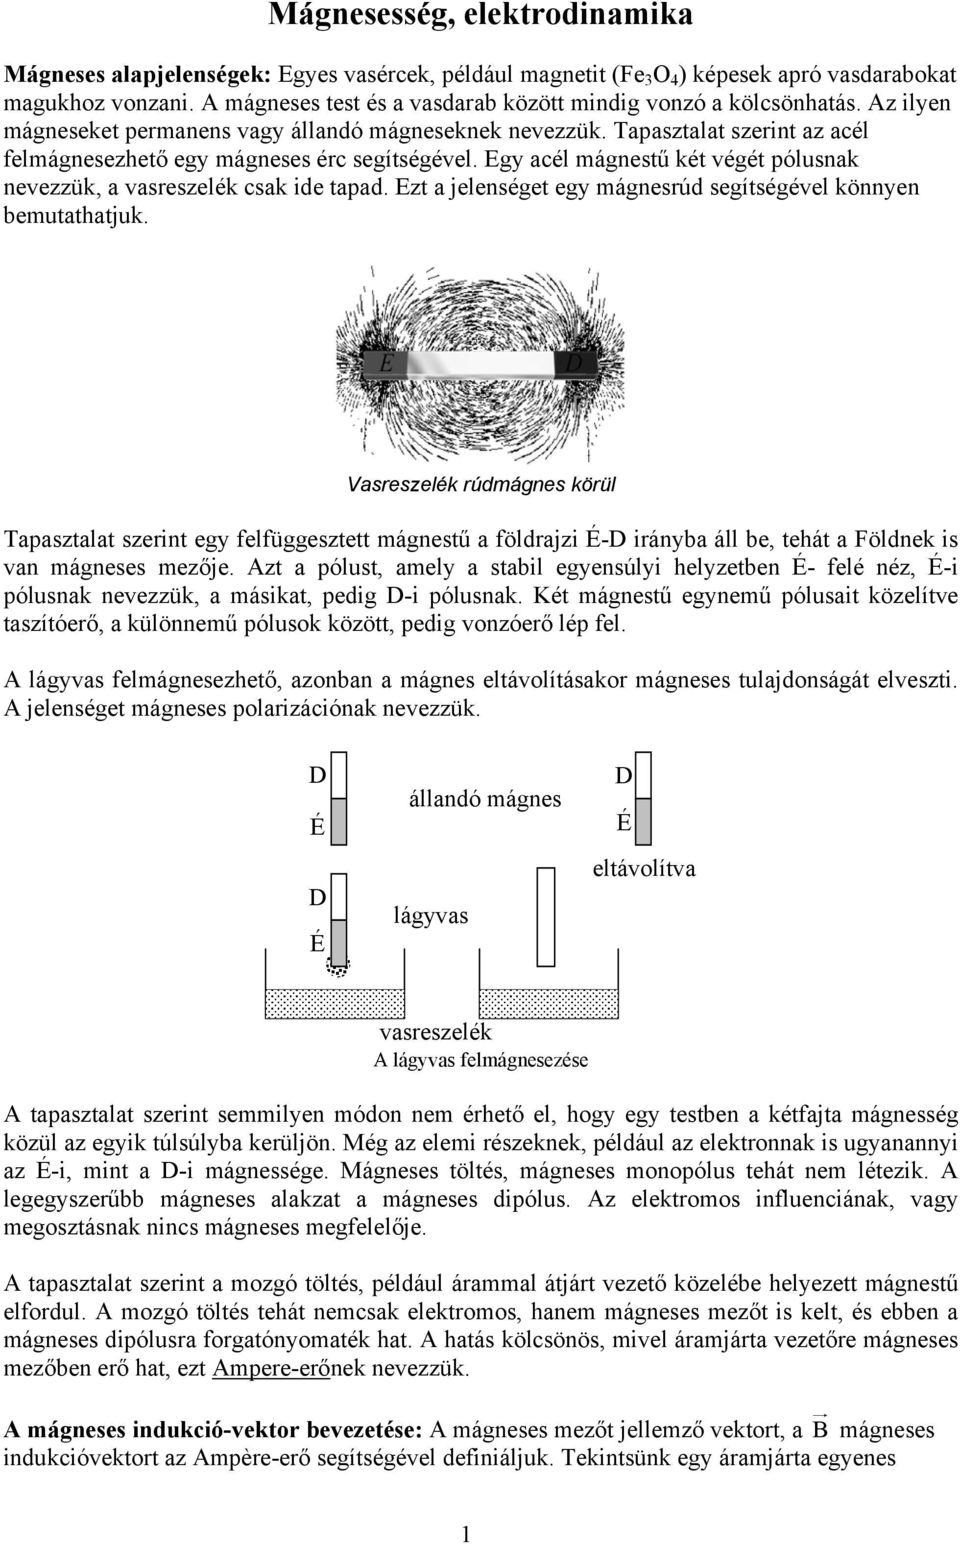 Mágnesesség, elektrodinamika - PDF Ingyenes letöltés